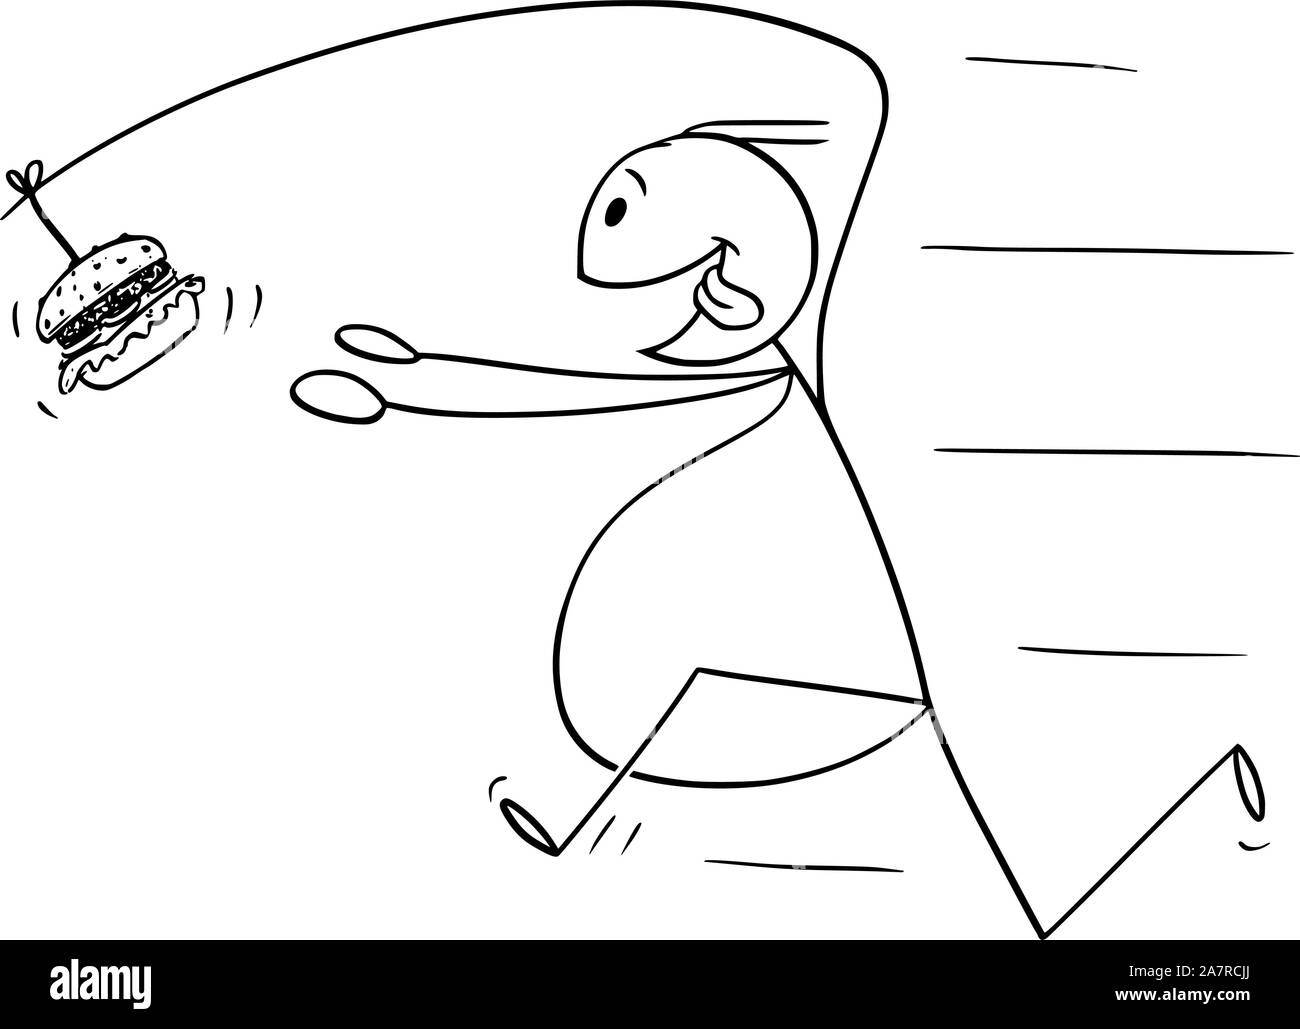 Vector cartoon stick figura disegno illustrazione concettuale di grasso sovrappeso uomo a caccia di malsana junk food burger o hamburger sulla canna da pesca attaccato al suo retro. Illustrazione Vettoriale